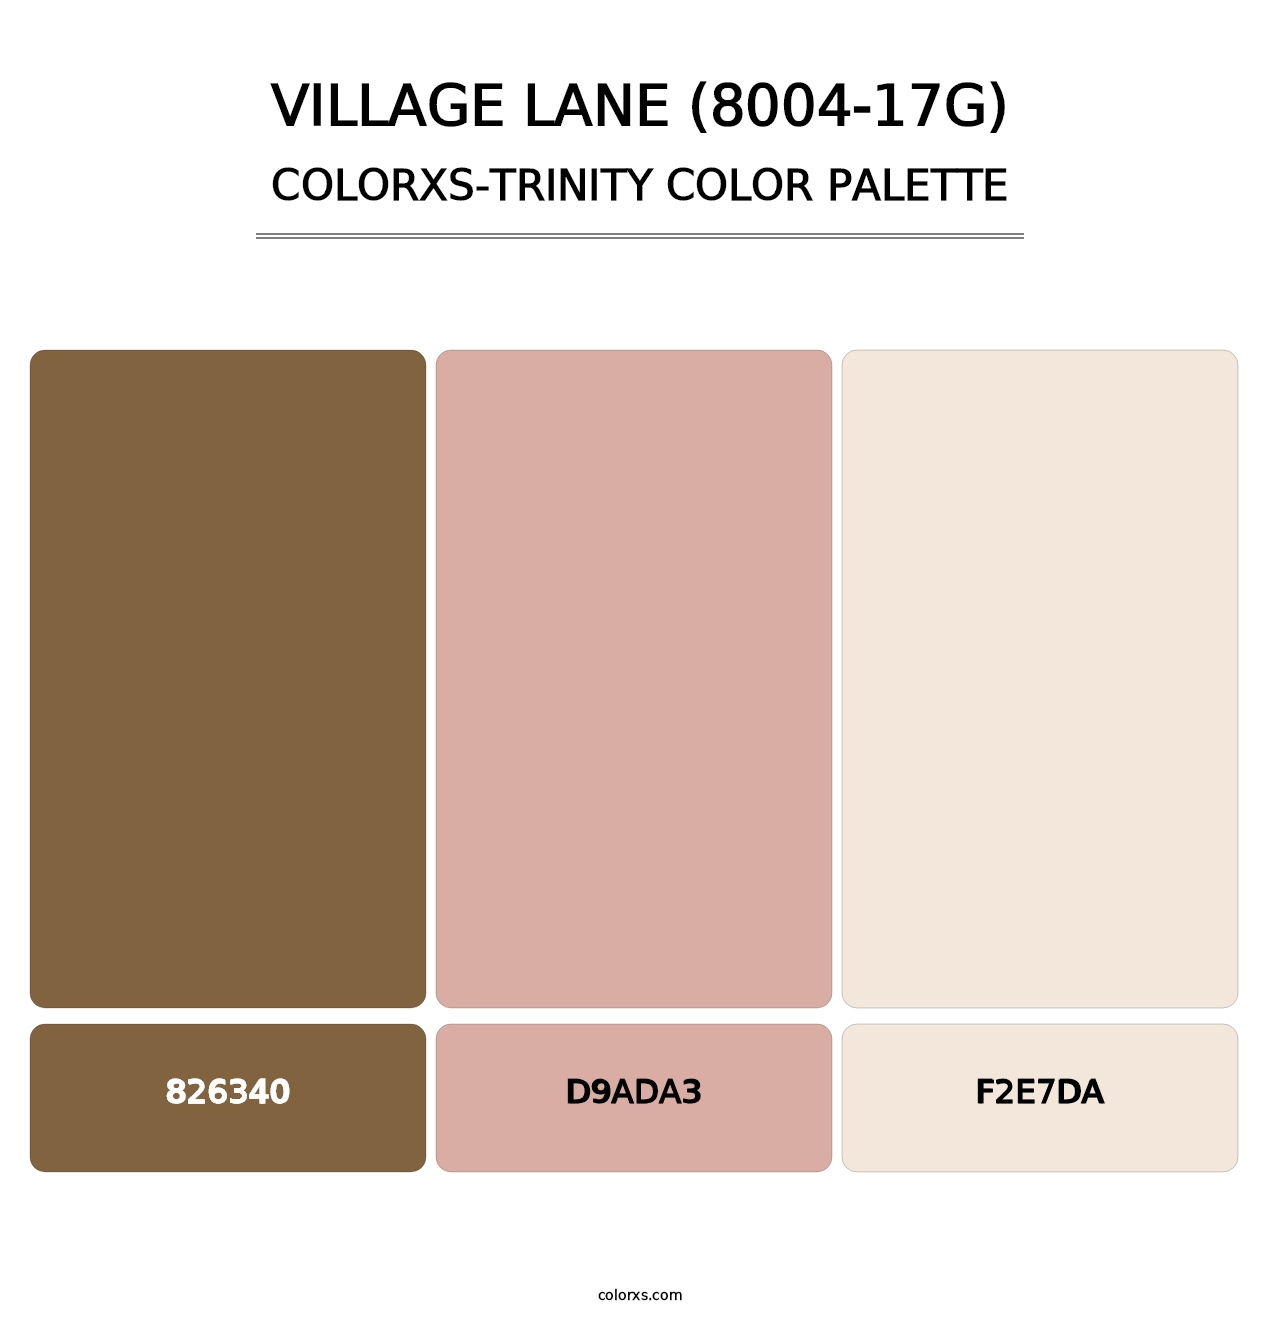 Village Lane (8004-17G) - Colorxs Trinity Palette